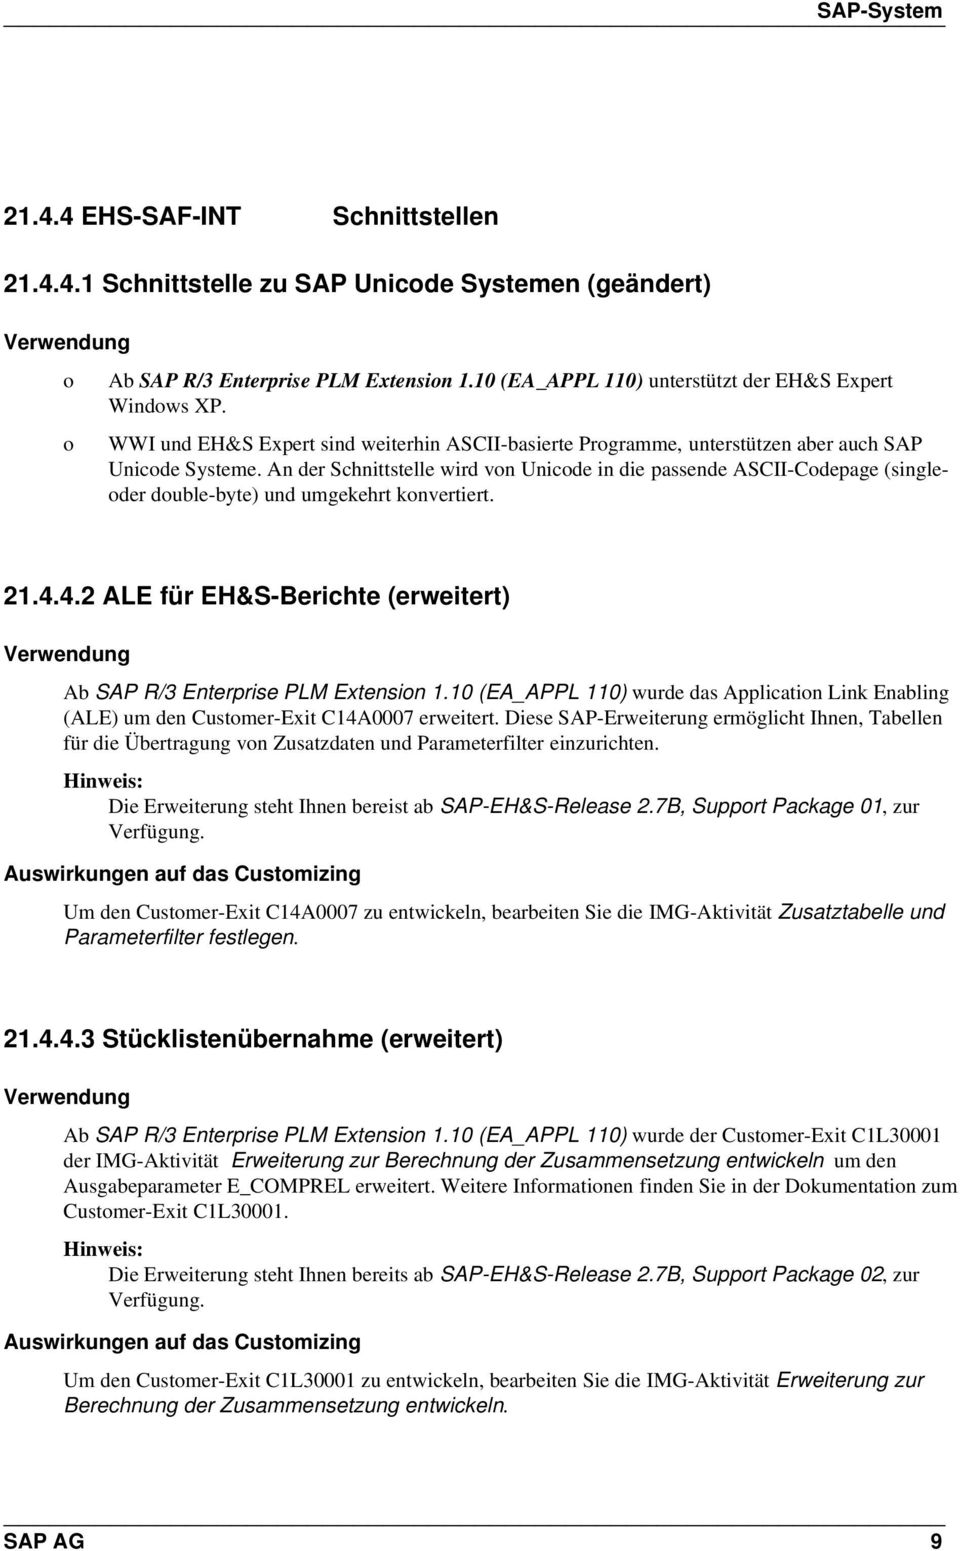 An der Schnittstelle wird vn Unicde in die passende ASCII-Cdepage (singleder duble-byte) und umgekehrt knvertiert. 21.4.4.2 ALE für EH&S-Berichte (erweitert) Ab SAP R/3 Enterprise PLM Extensin 1.